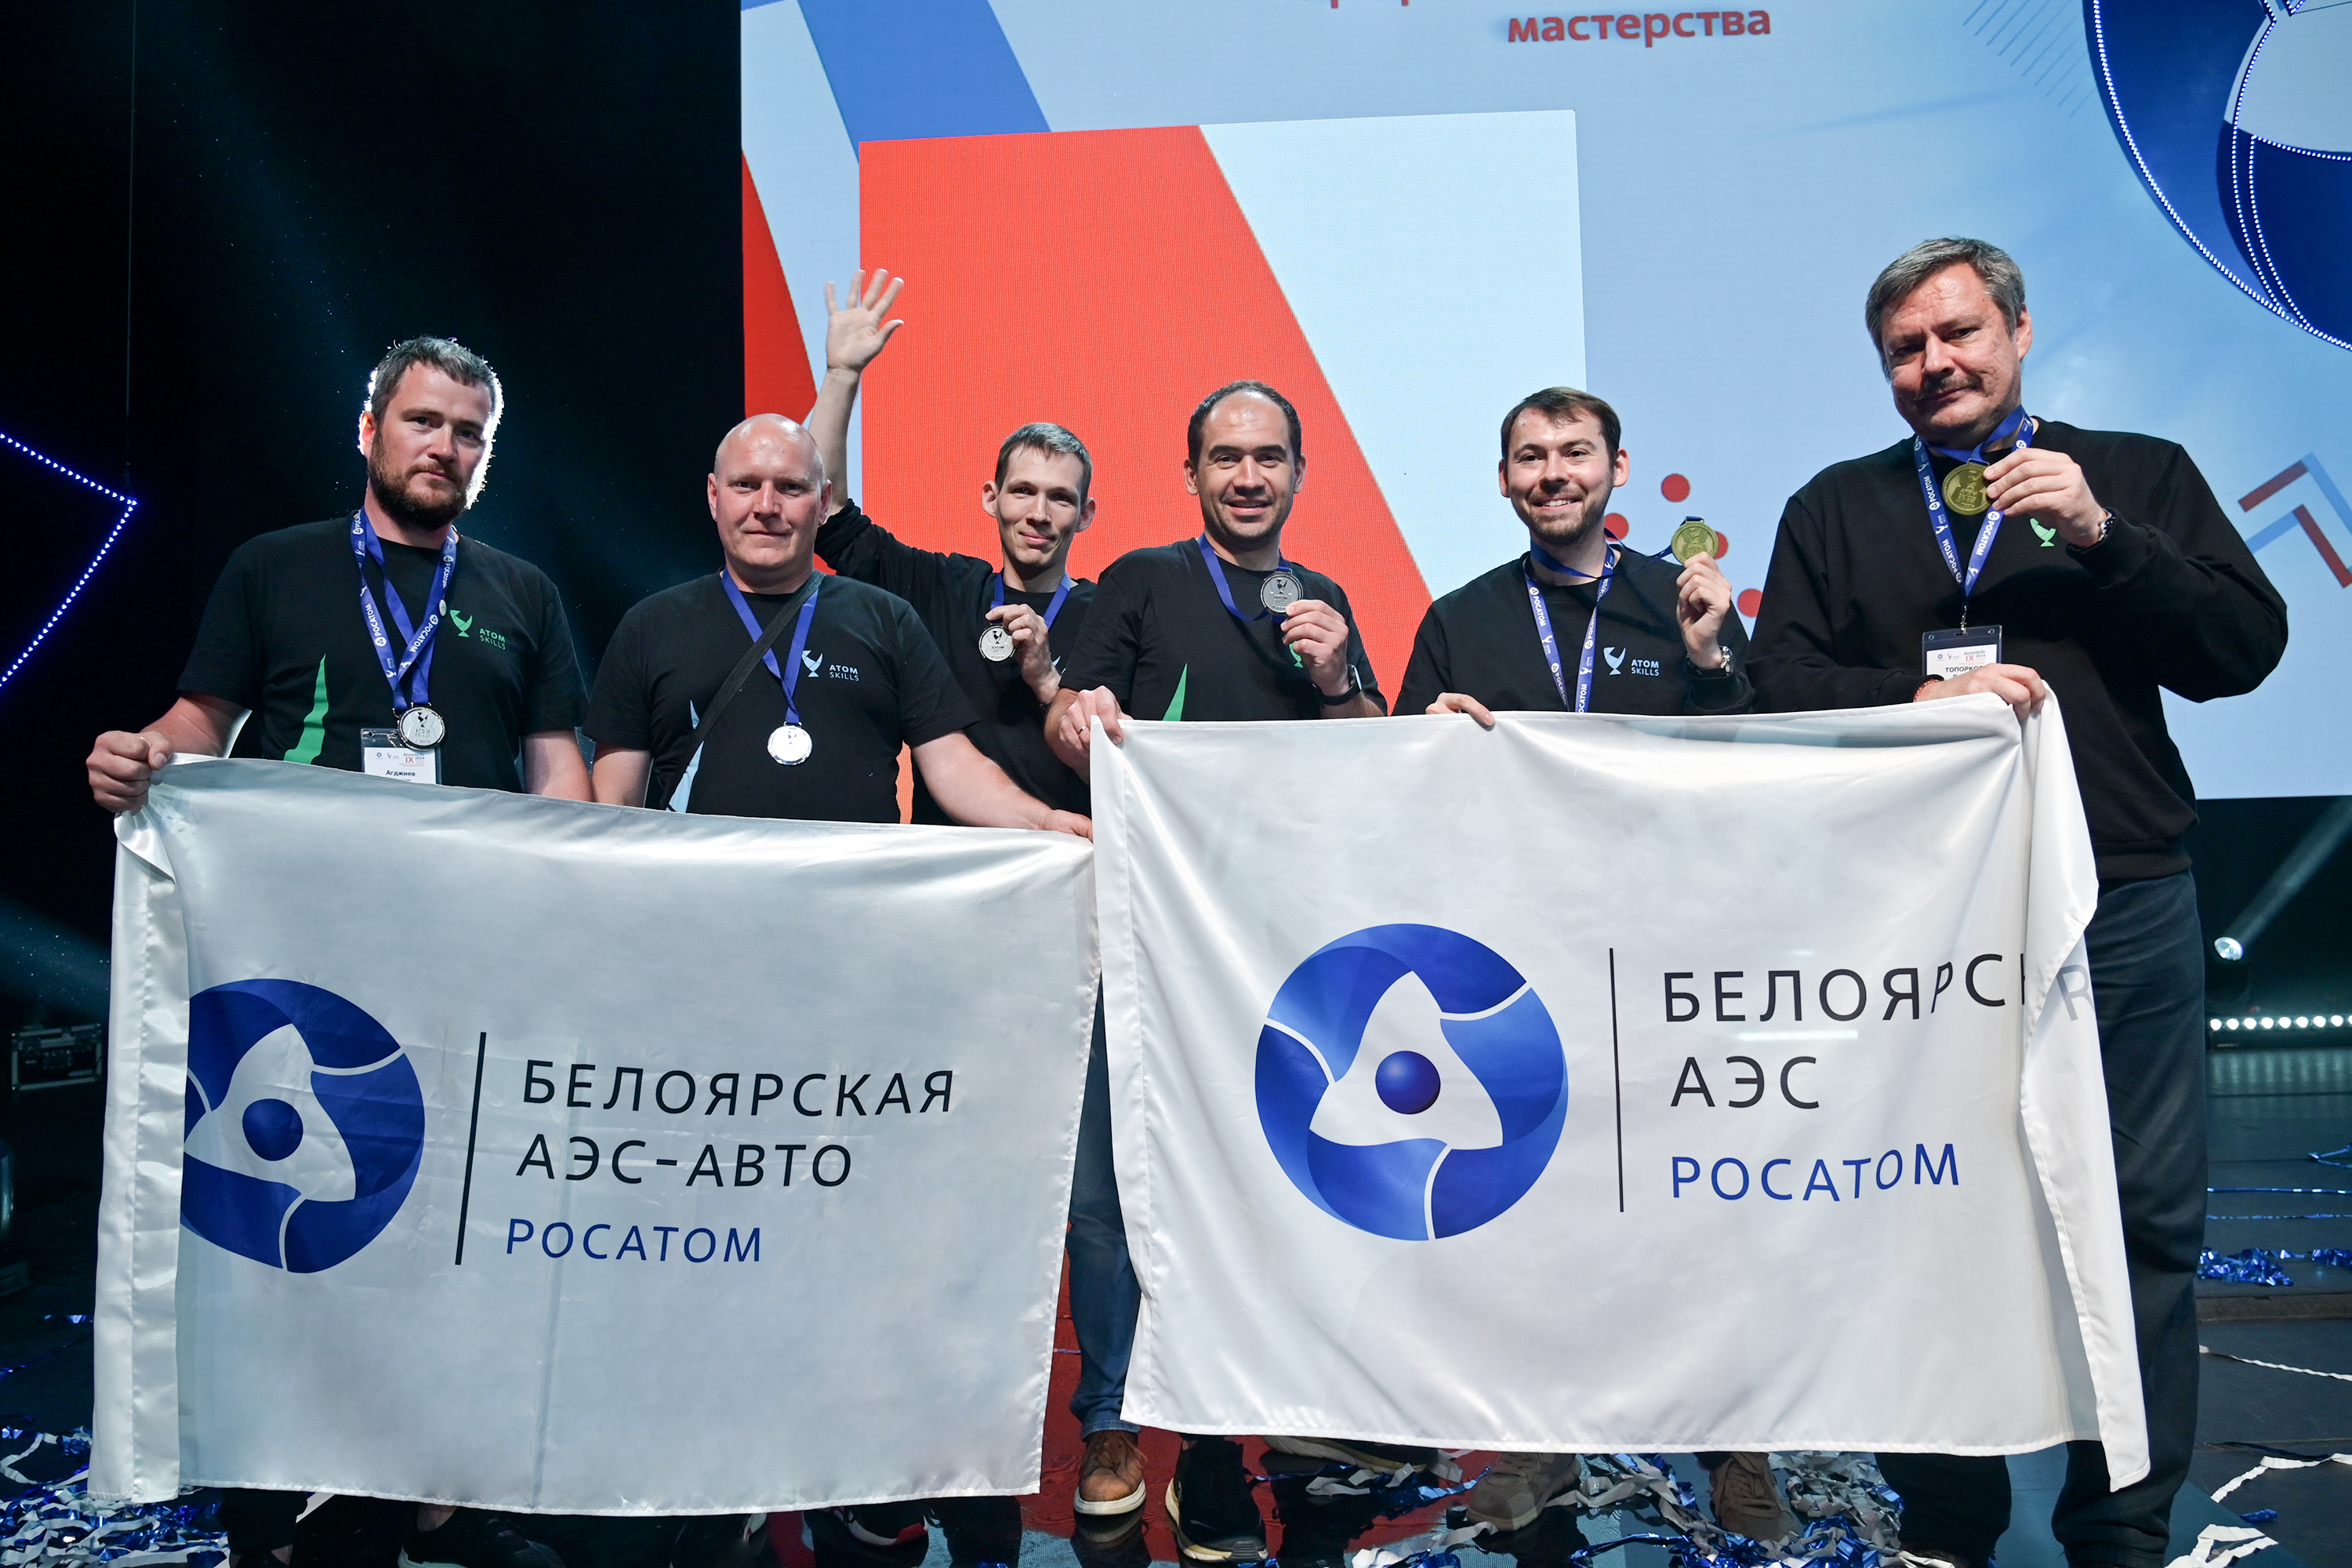 Специалисты Белоярской АЭС победили в самом крупном корпоративном профессиональном чемпионате в мире - AtomSkills